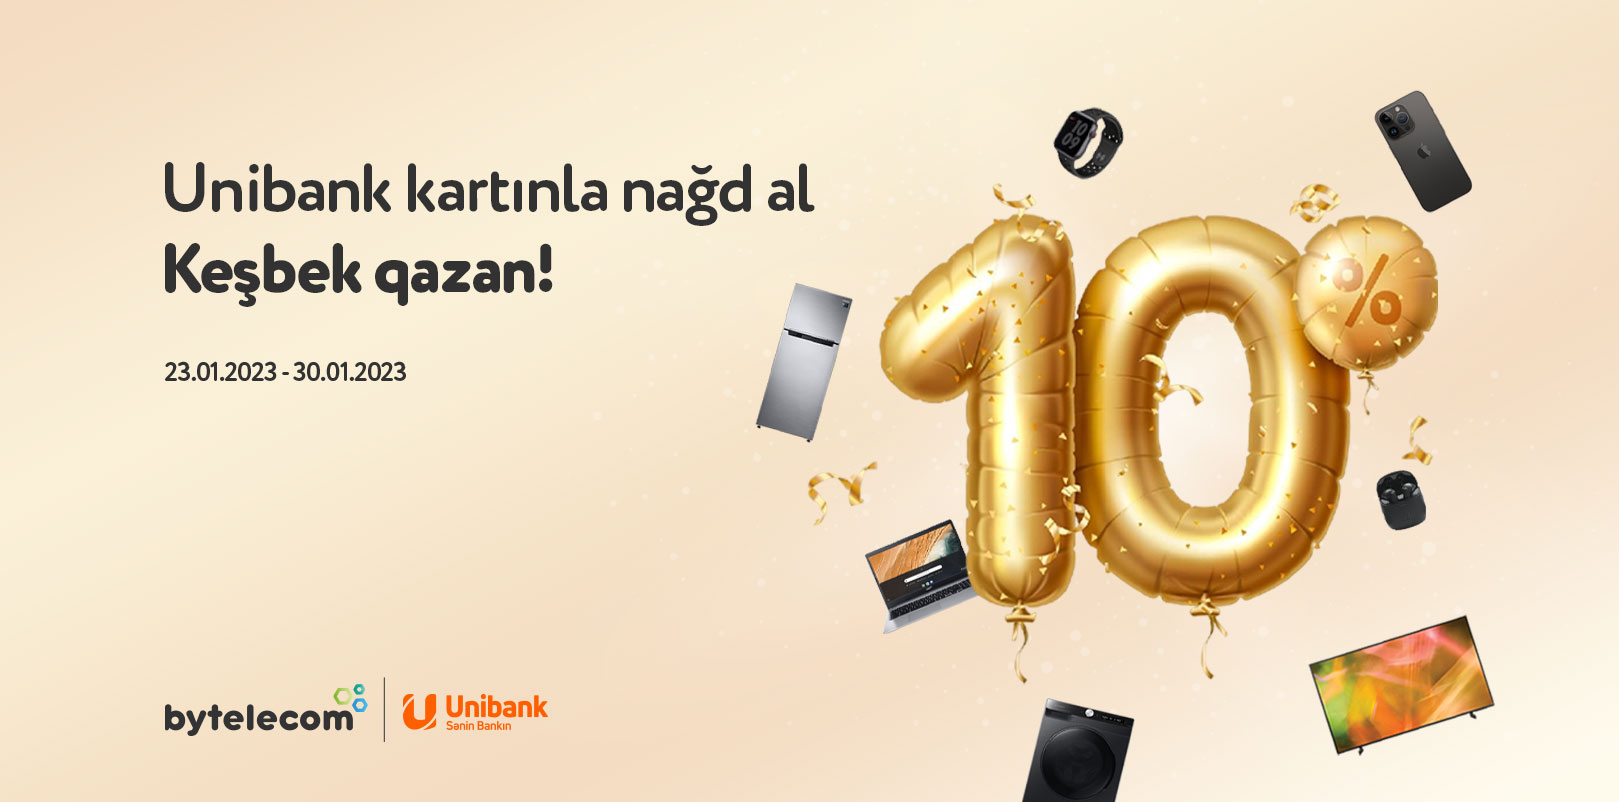 Unibank-la 10% keşbek!